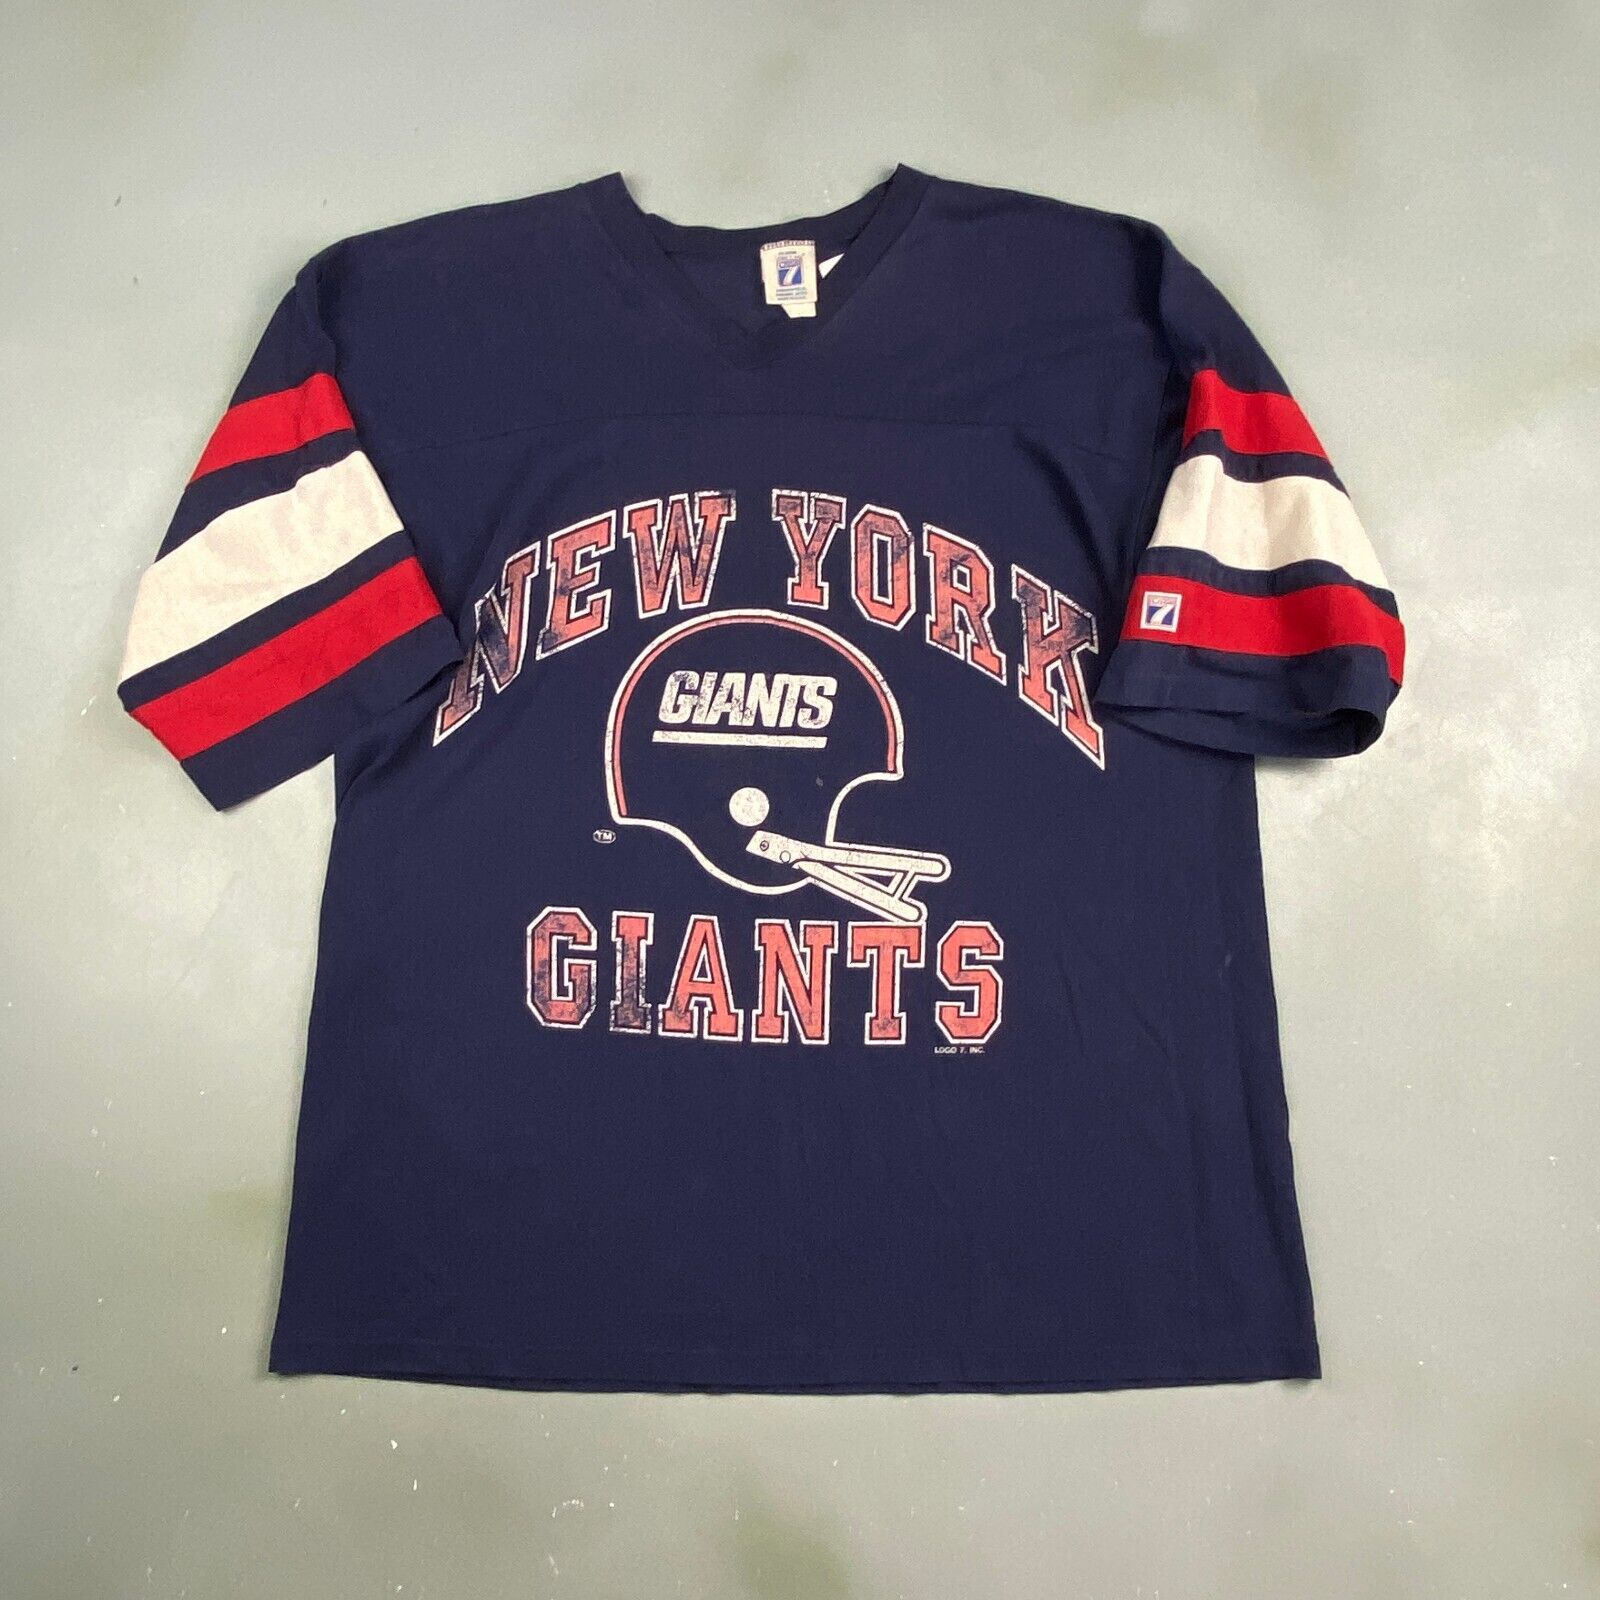 new york giants white t shirt